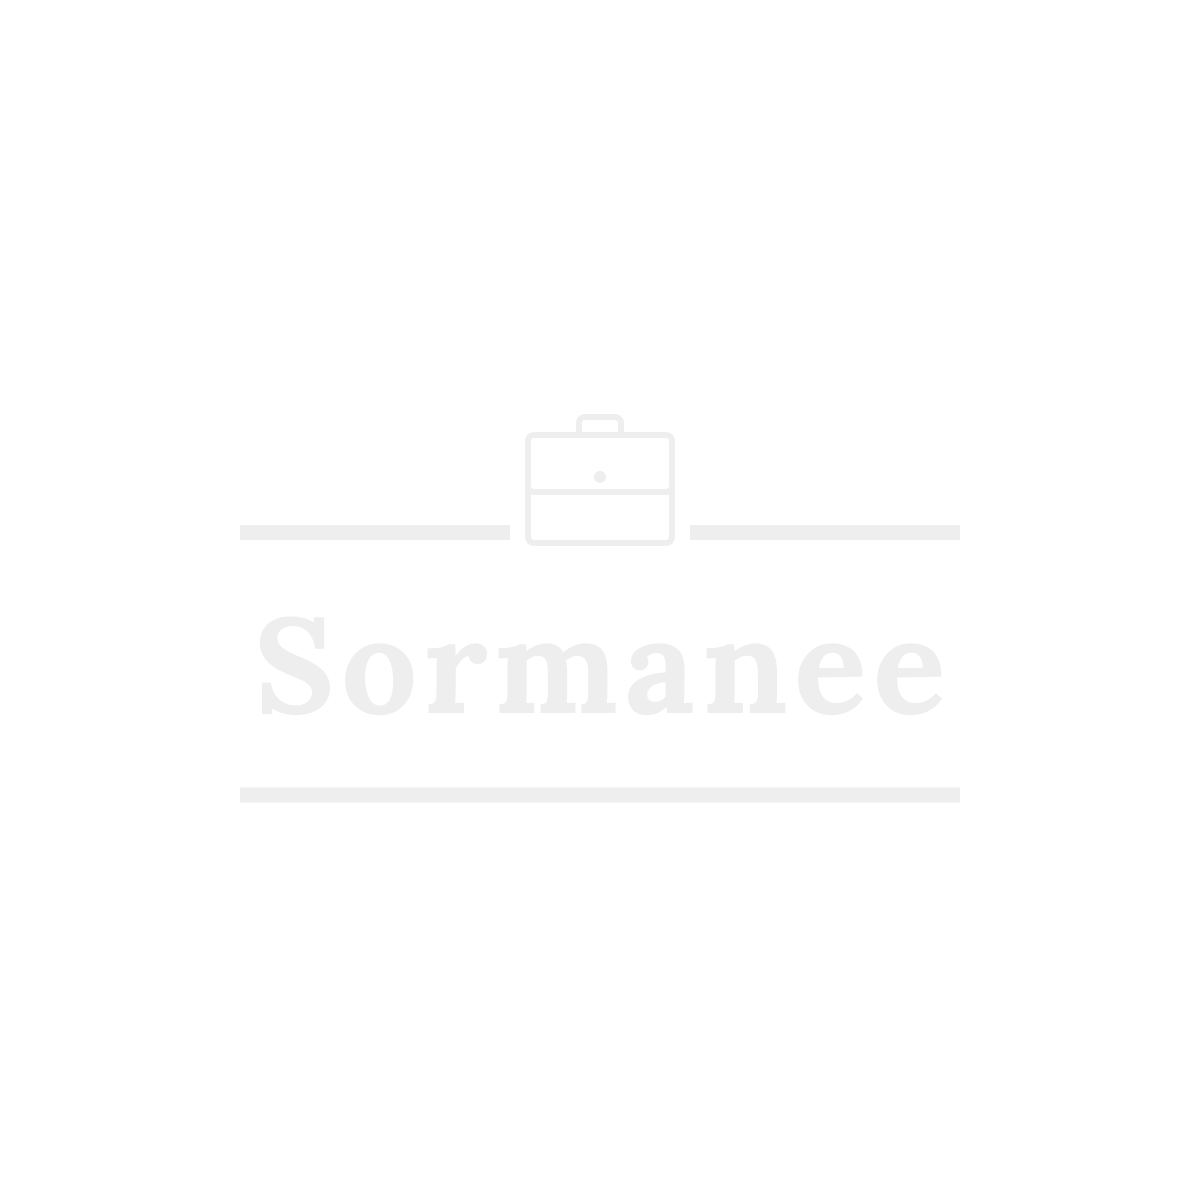 Sormanee